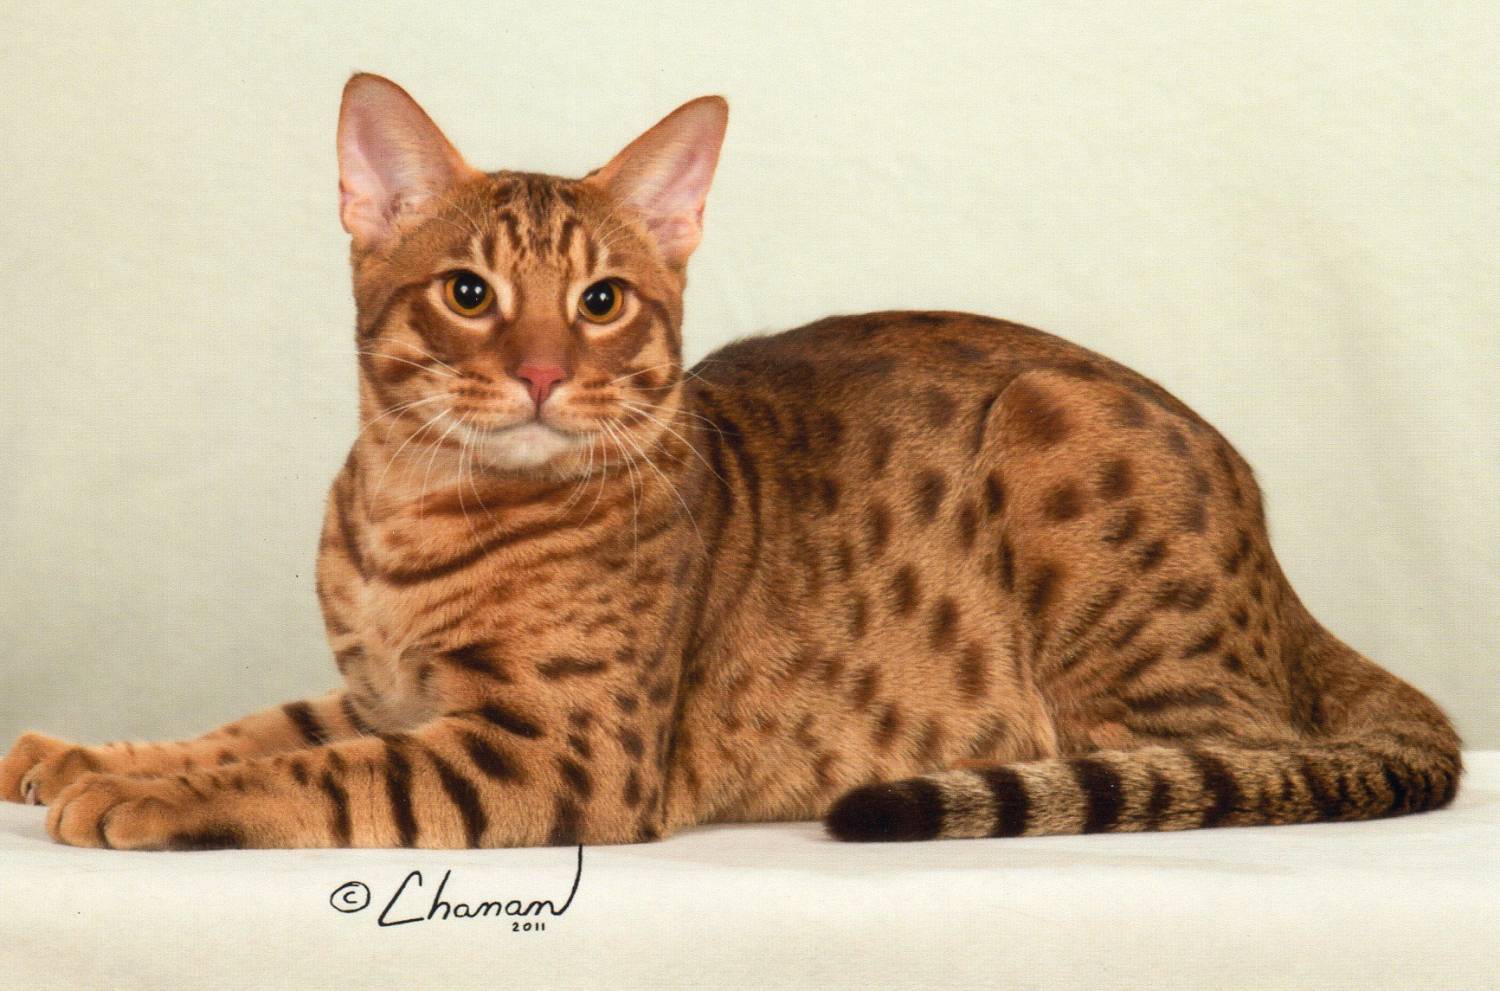 Тайская кошка: описание внешности и характера породы, уход за питомцем и его содержание, выбор котёнка, отзывы владельцев, фото кота